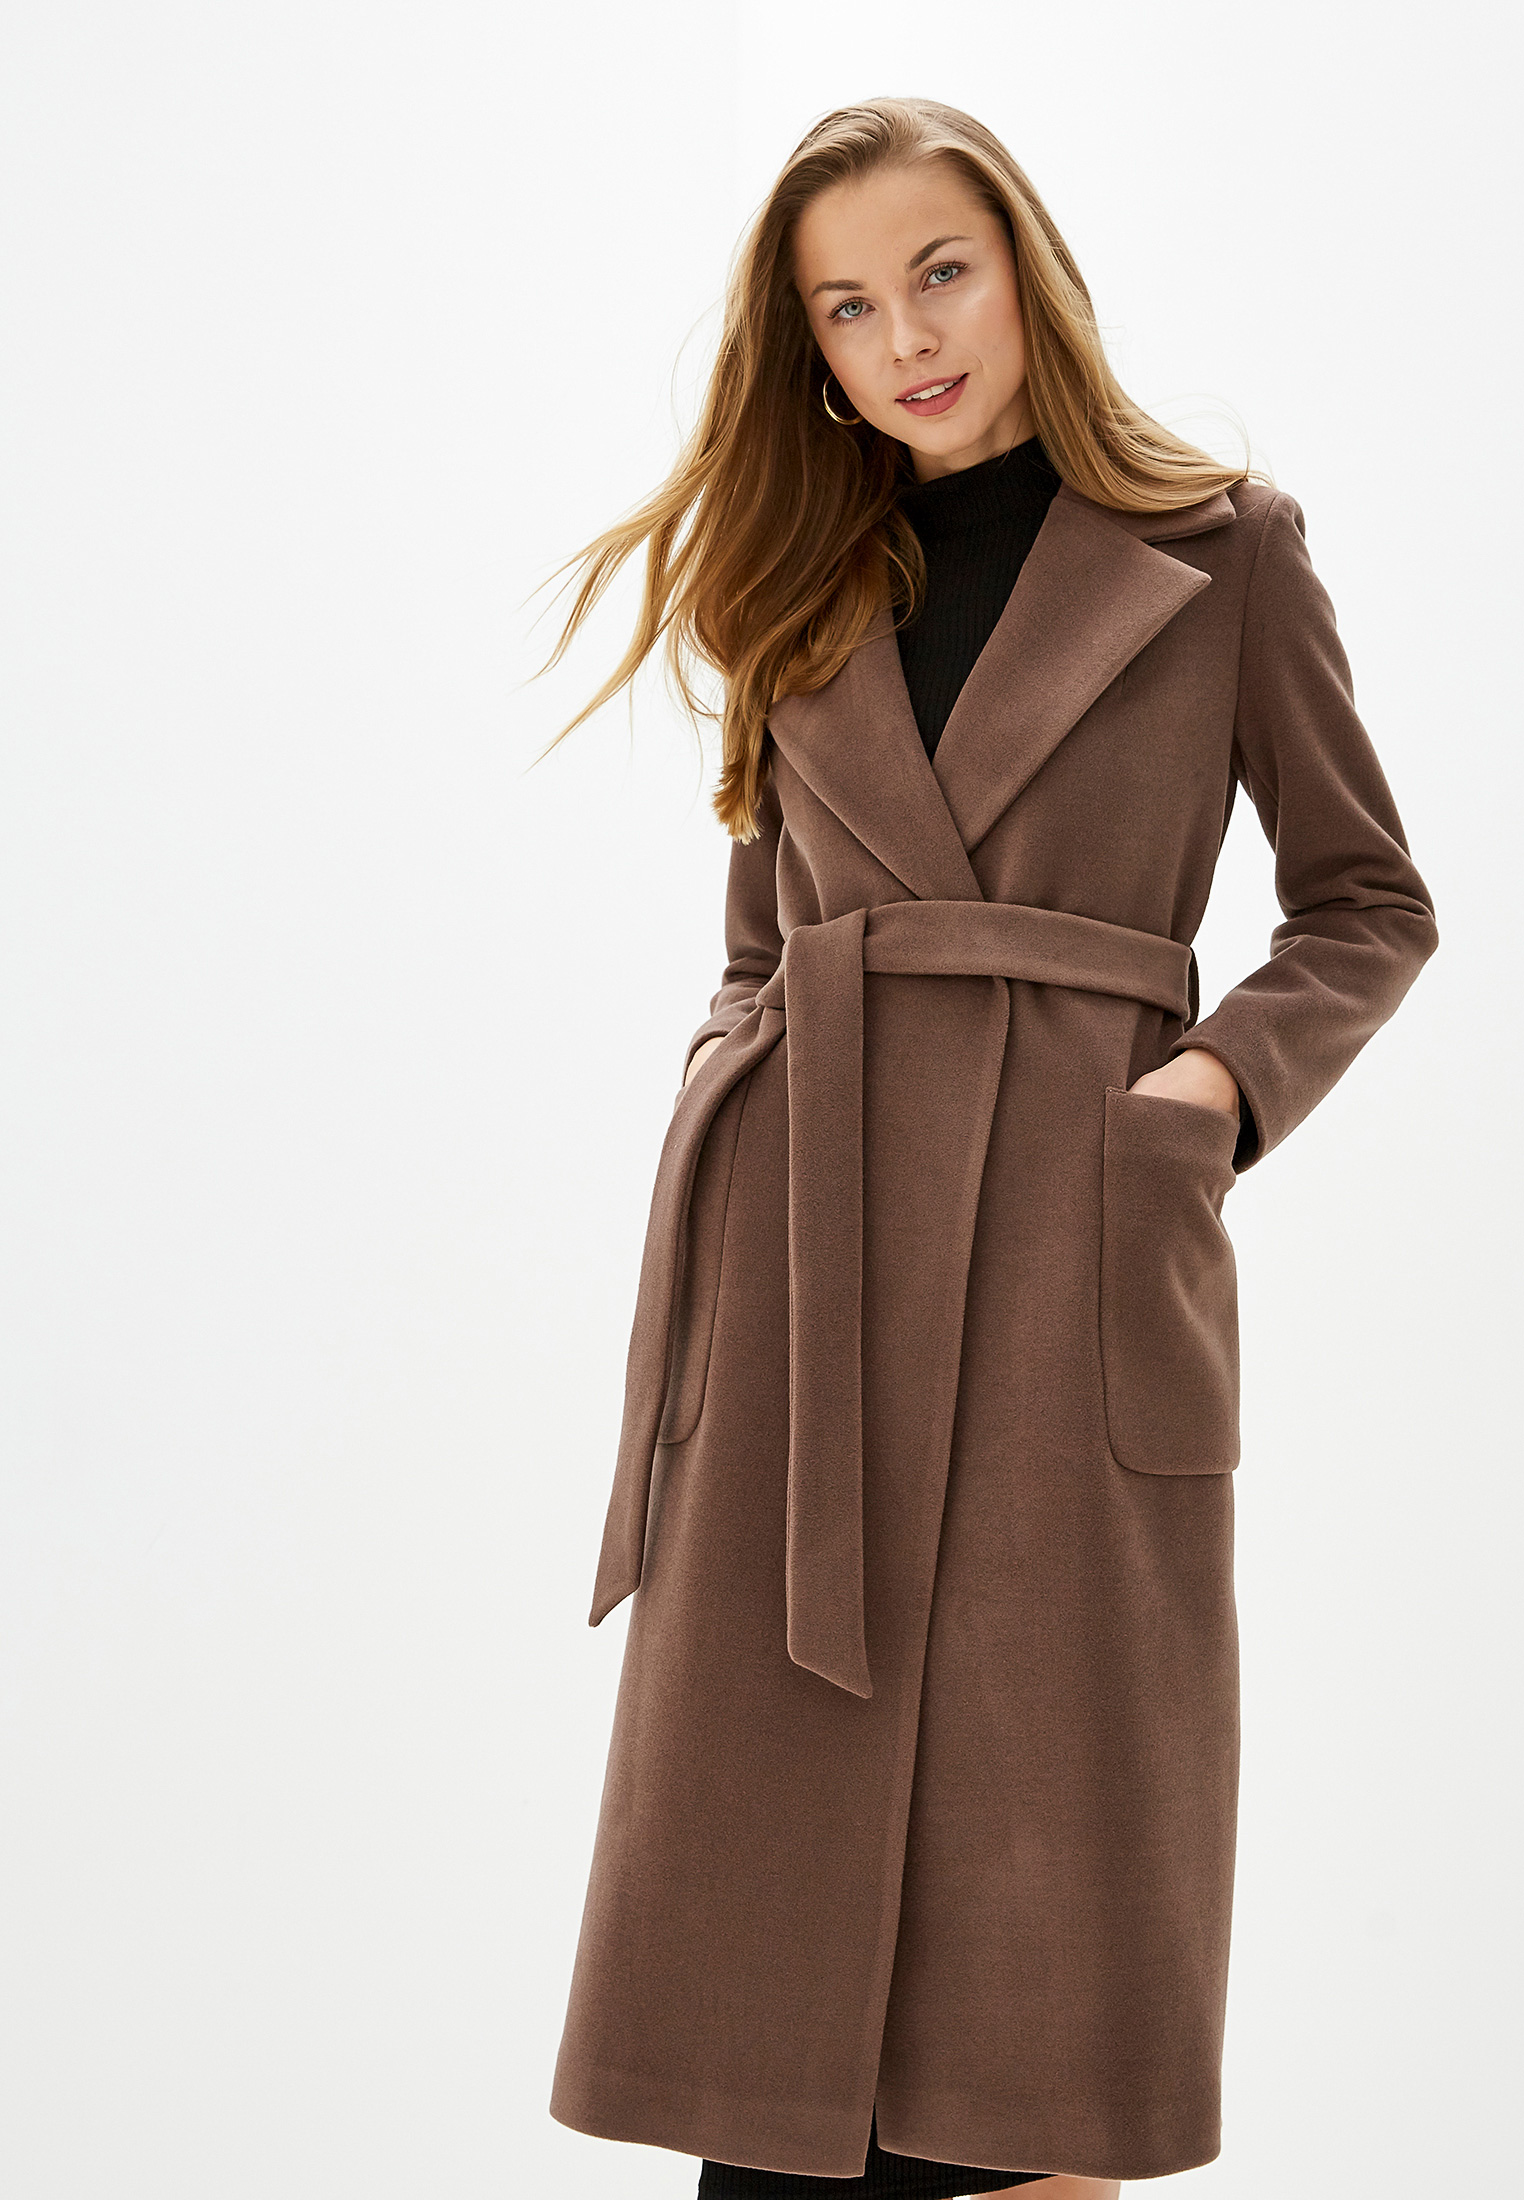 Купить коричневое пальто. Коричневое пальто. Коричневое пальто женское. Шоколадное пальто. Пальто коричневое женское длинное.